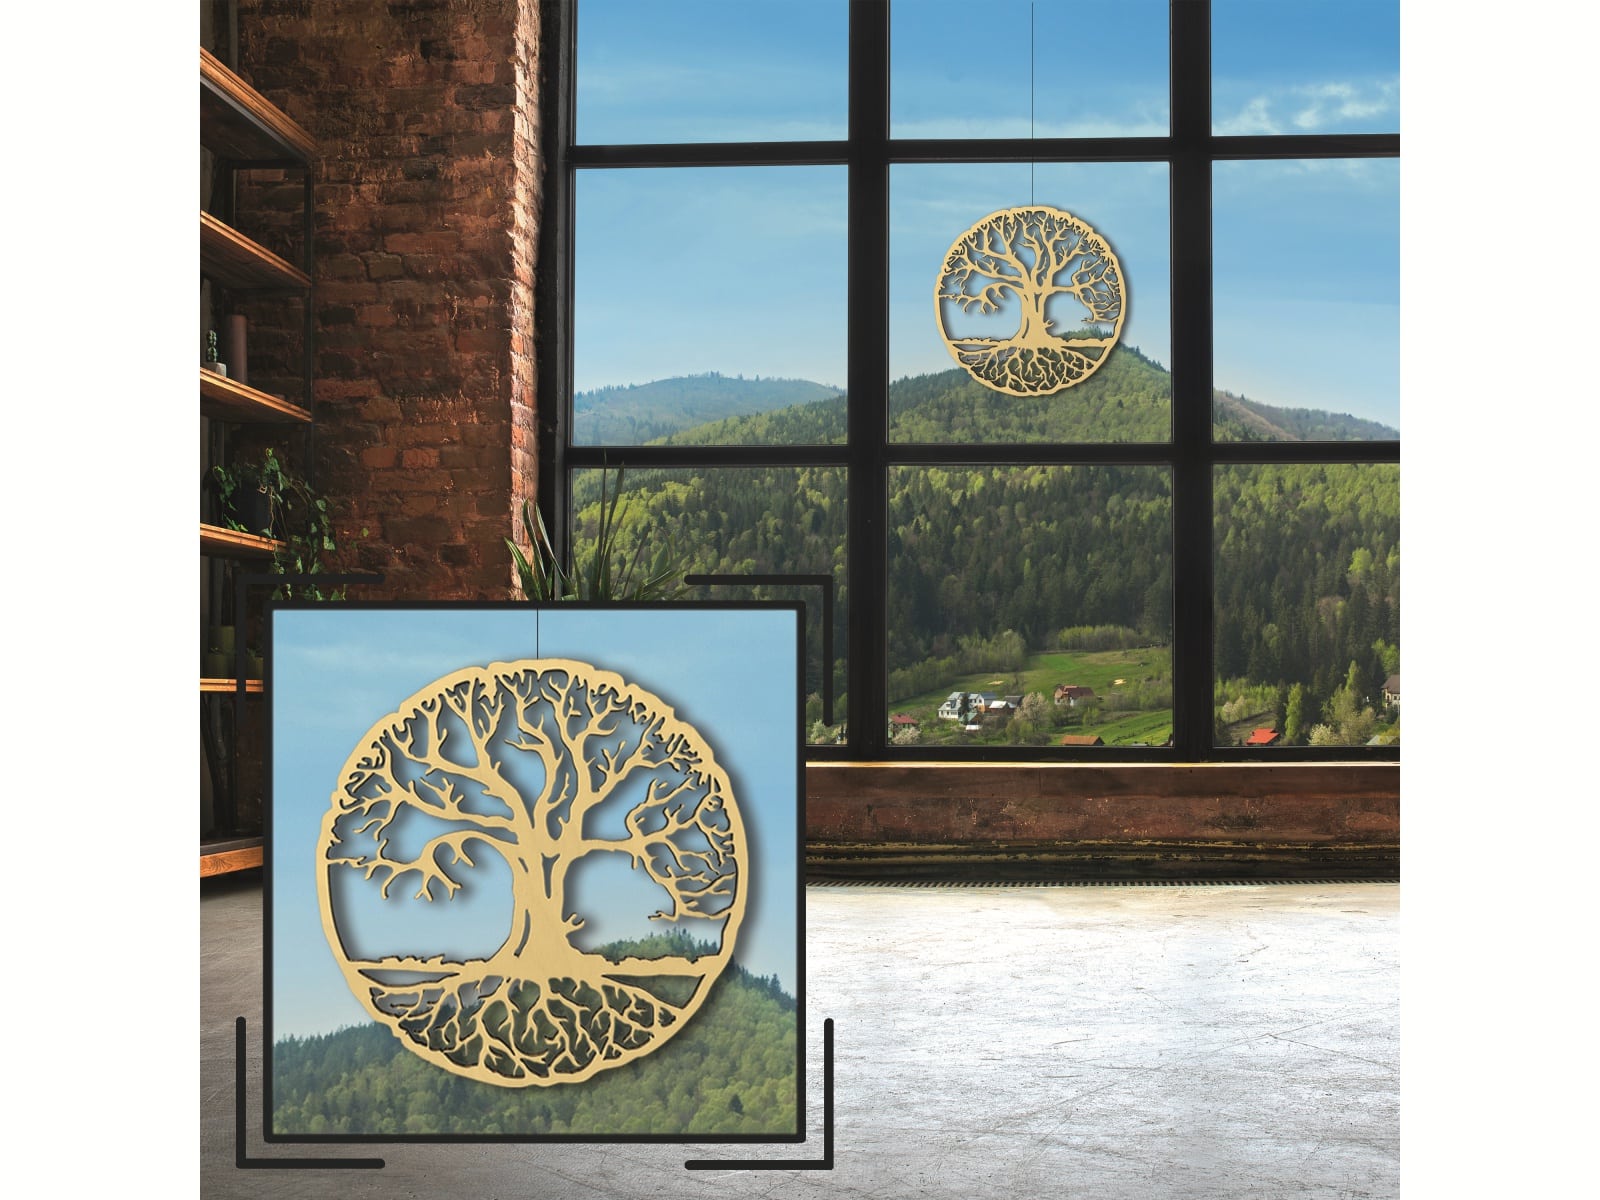 HOLZBIBER® Baum des Lebens 30 cm Durchmesser, zum Aufhängen Fensterschmuck Wandschmuck Amulett